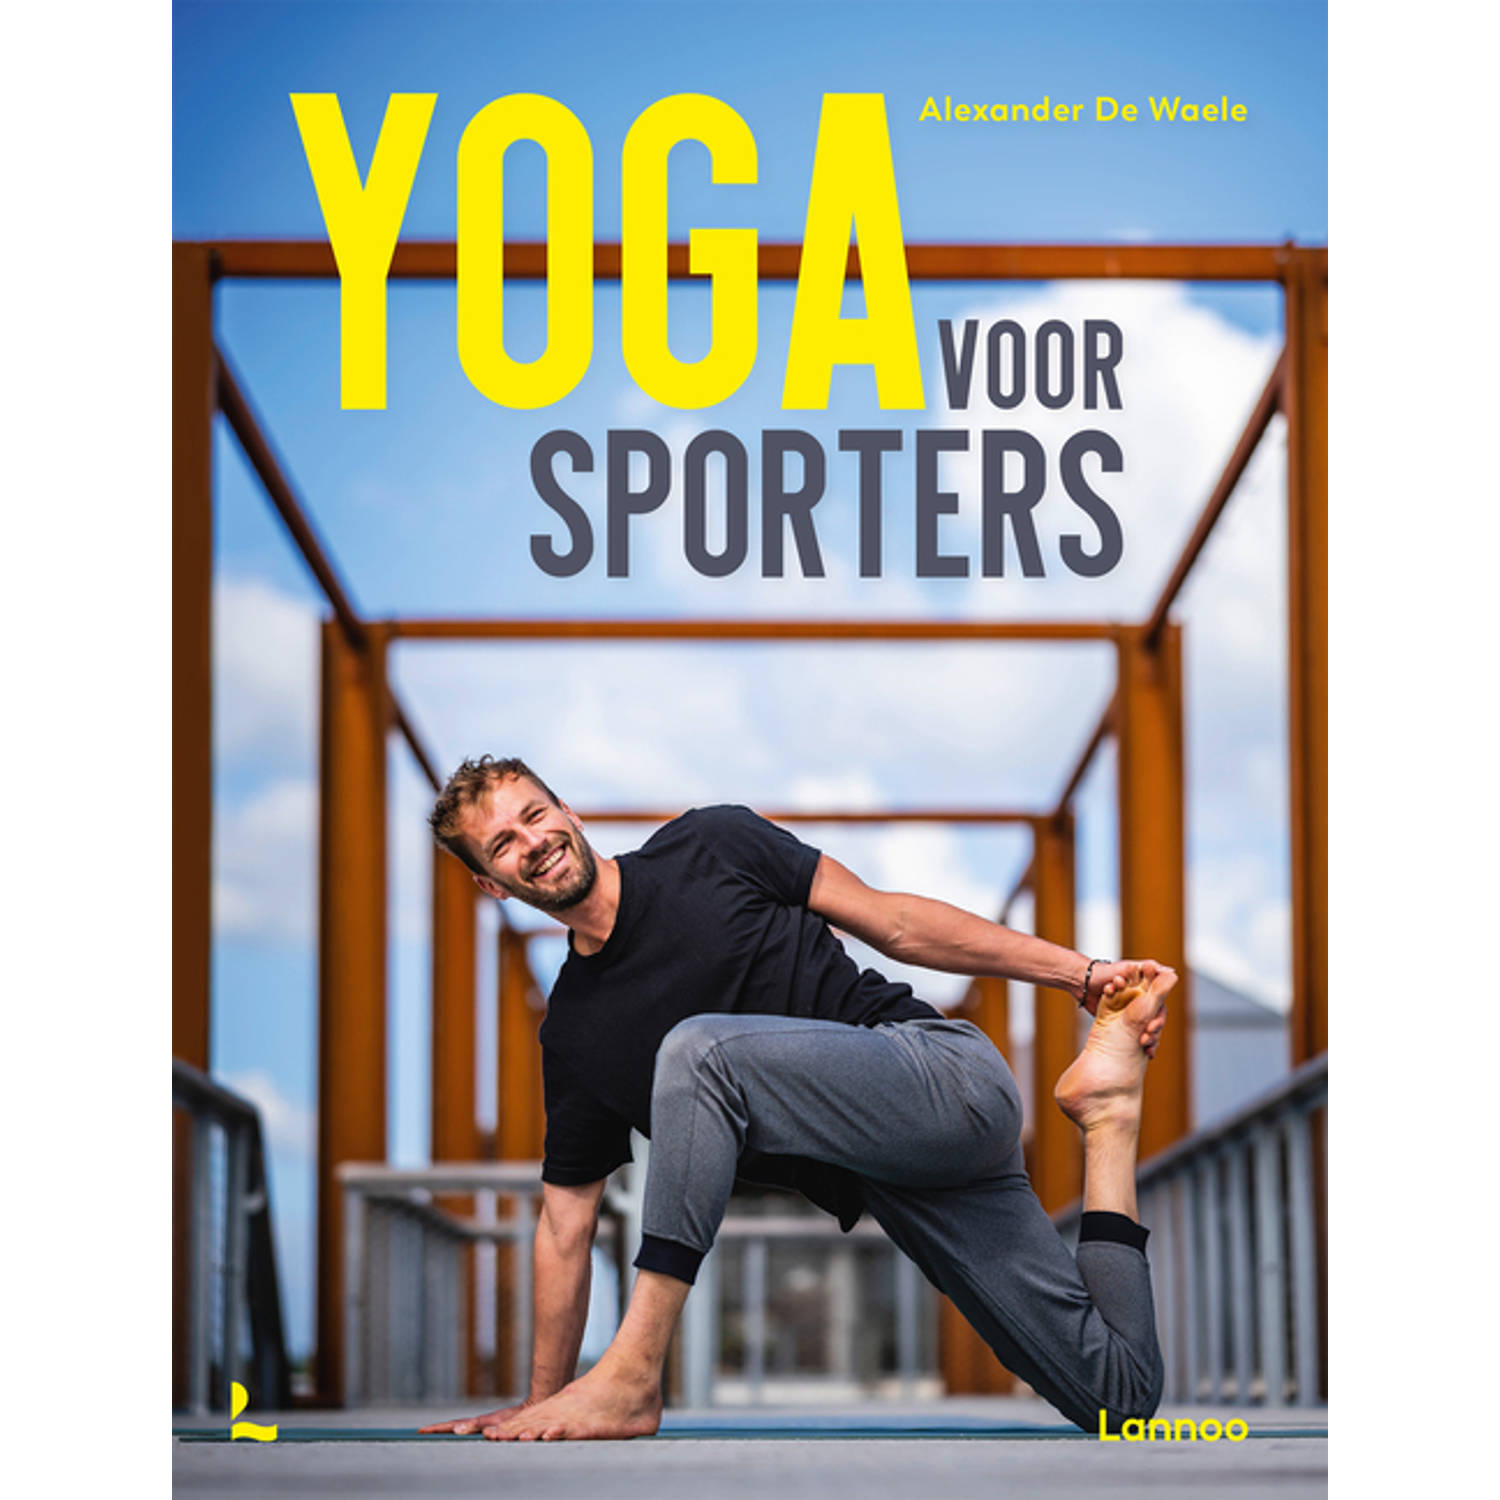 Yoga voor sporters